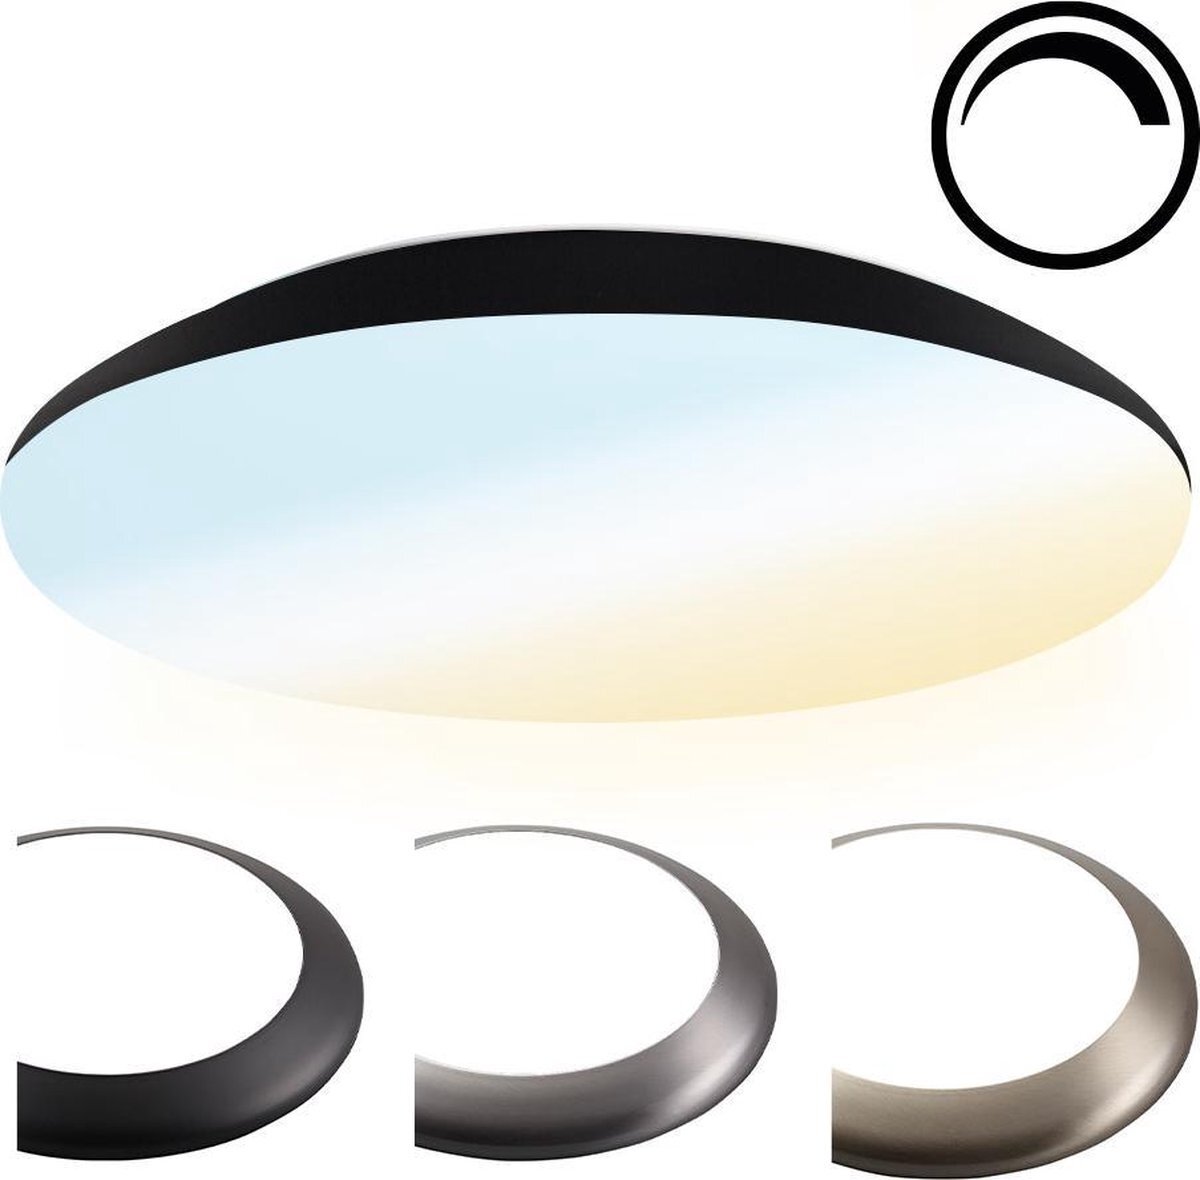 HOFTRONIC - Dimbare LED Plafondlamp - Plafonnière - Zwart - 25 Watt - IP65 waterdicht - Kleur instelbaar (2700K, 4000K & 5000K) - 2600 Lumen - IK10 Stootveilig - Ø38 cm - Geschikt voor badkamer - Voor binnen en buiten -